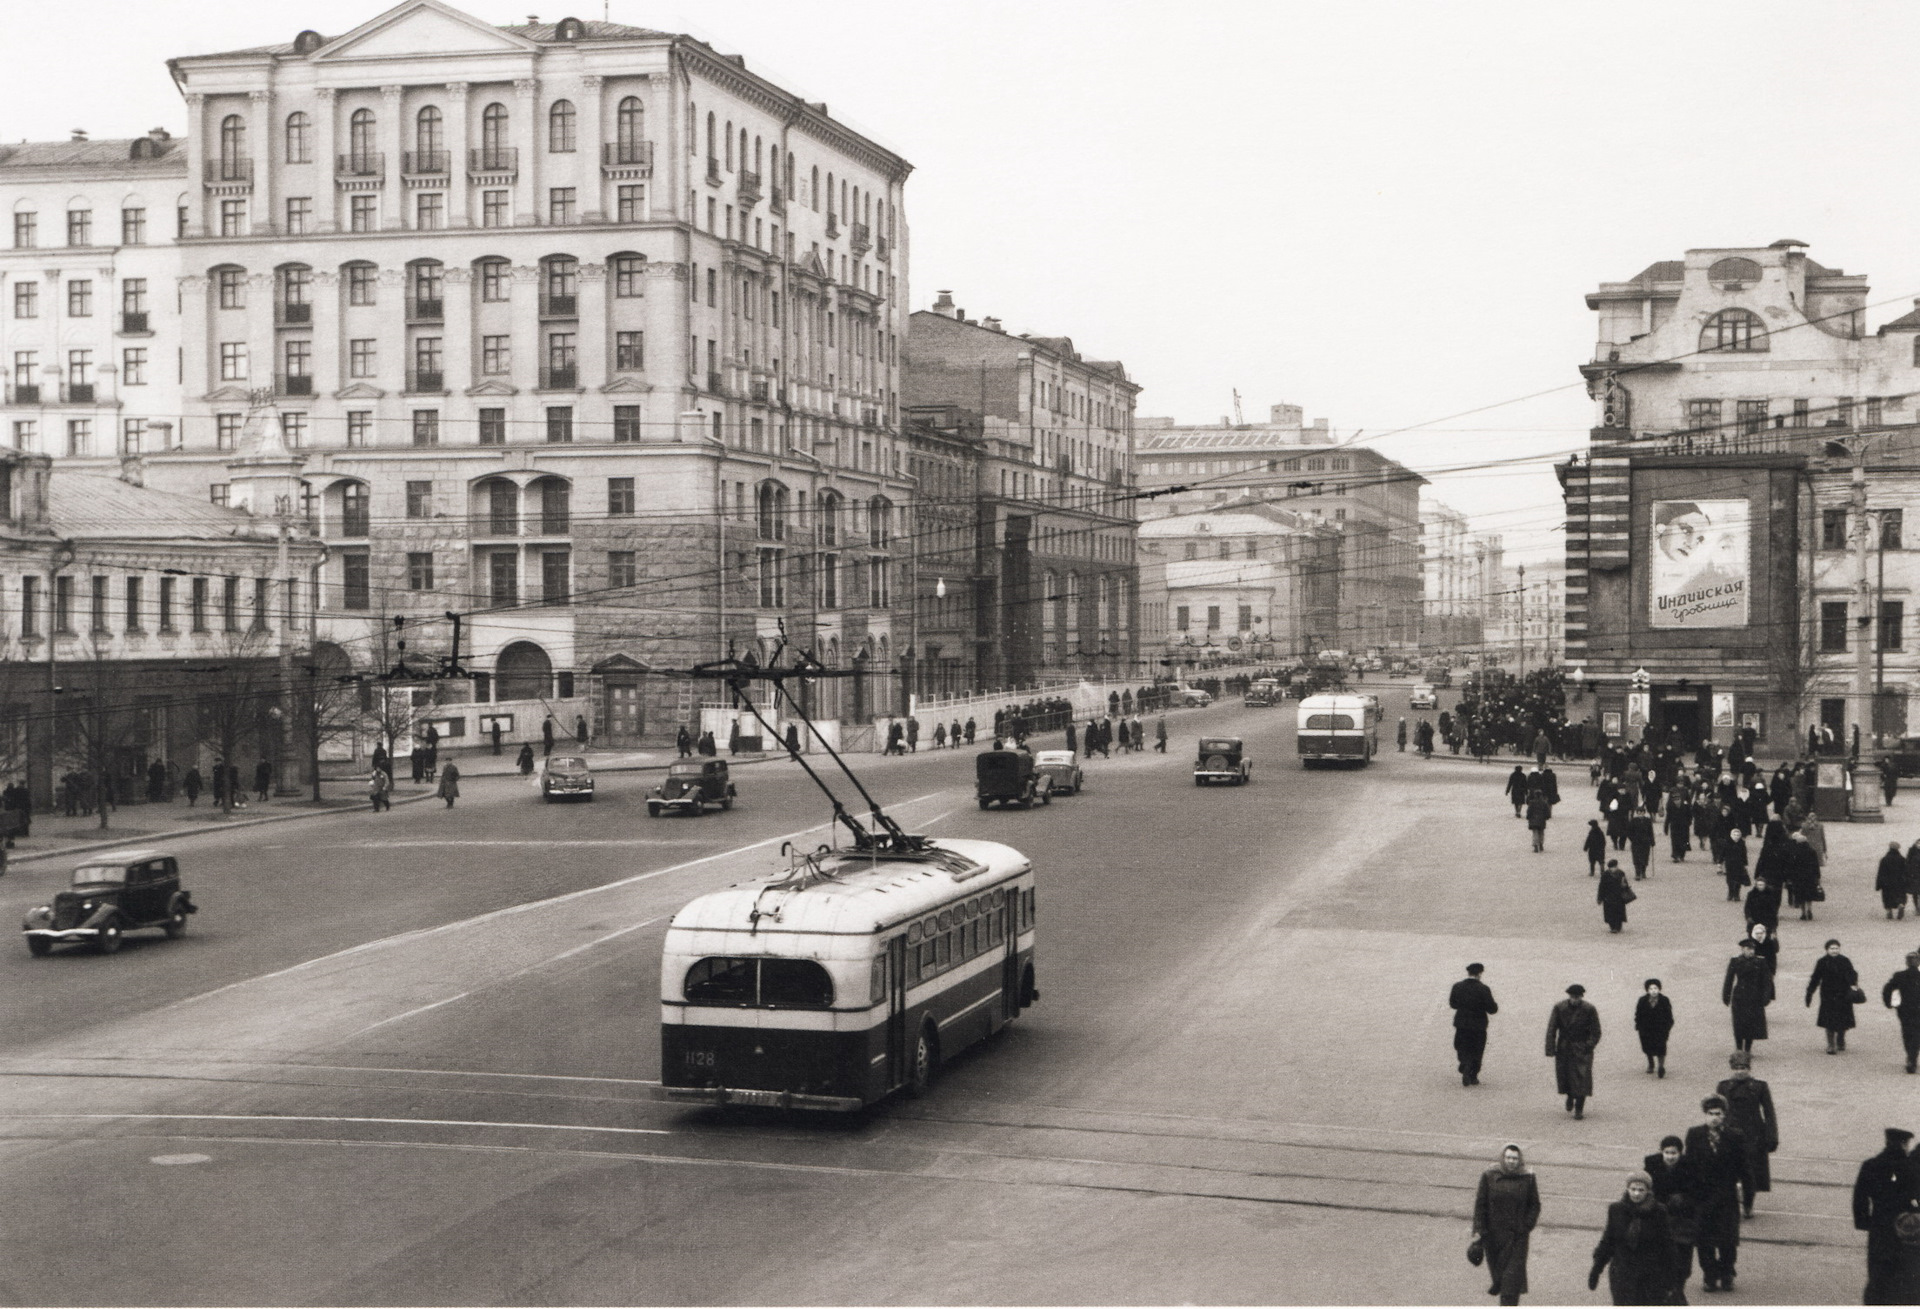 тверская улица в москве старые